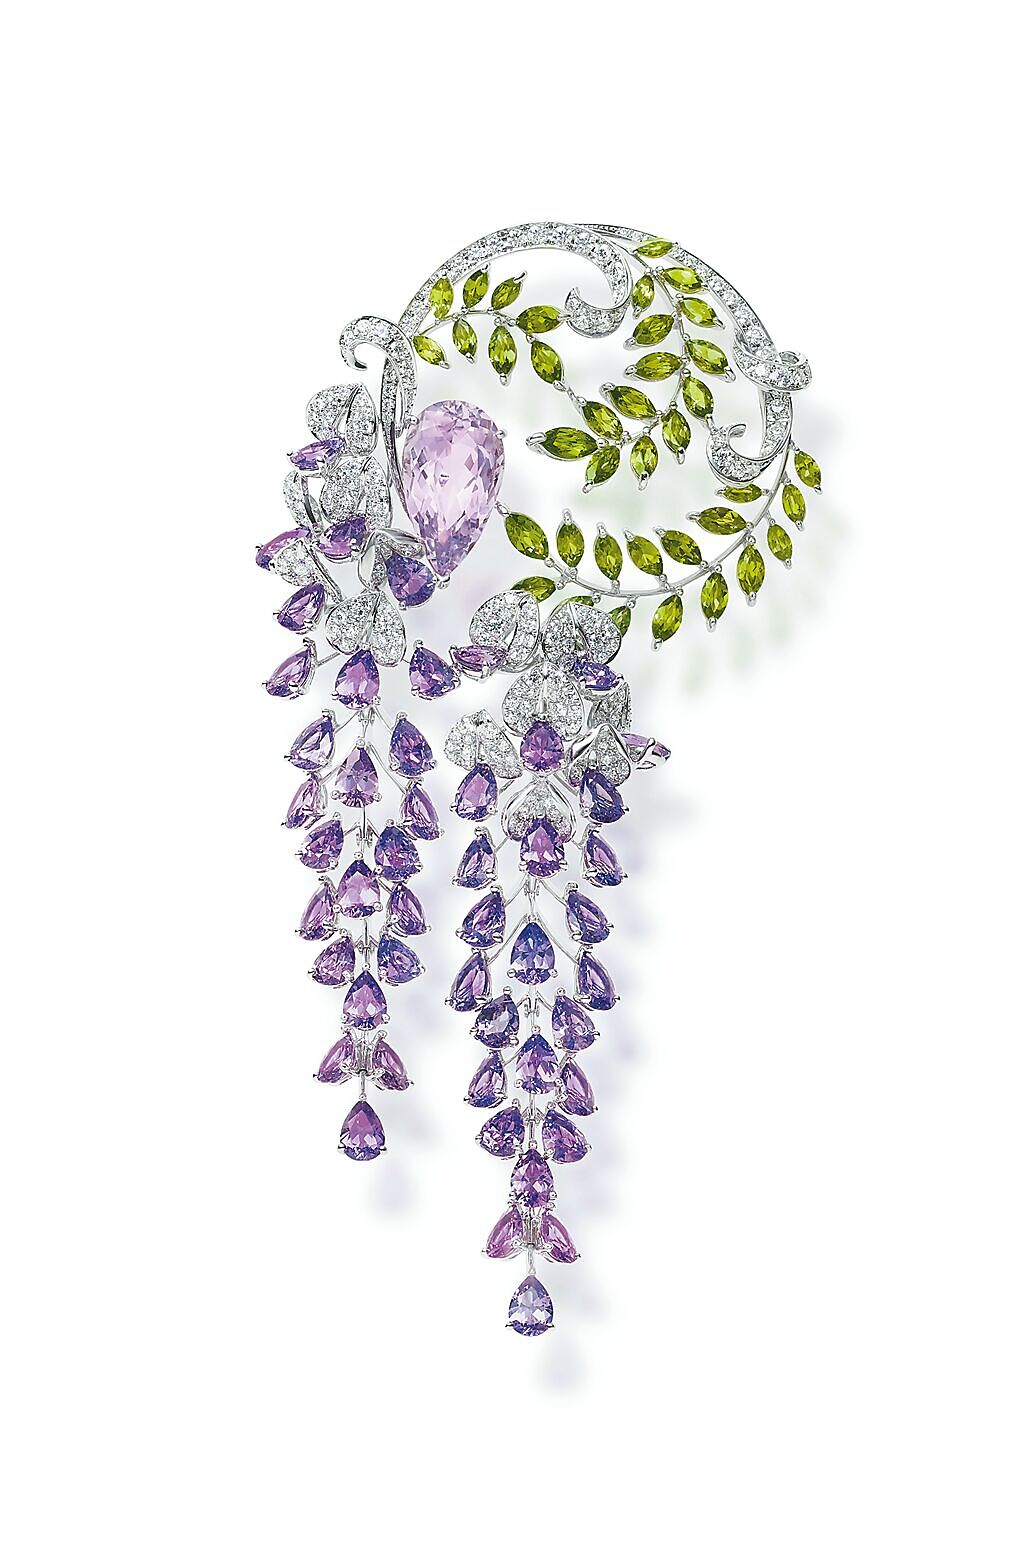 MIKIMOTO珠寶以精巧細緻的工藝、曖曖含光的內歛含蓄，流露超凡脫俗的品味。（MIKIMOTO提供）